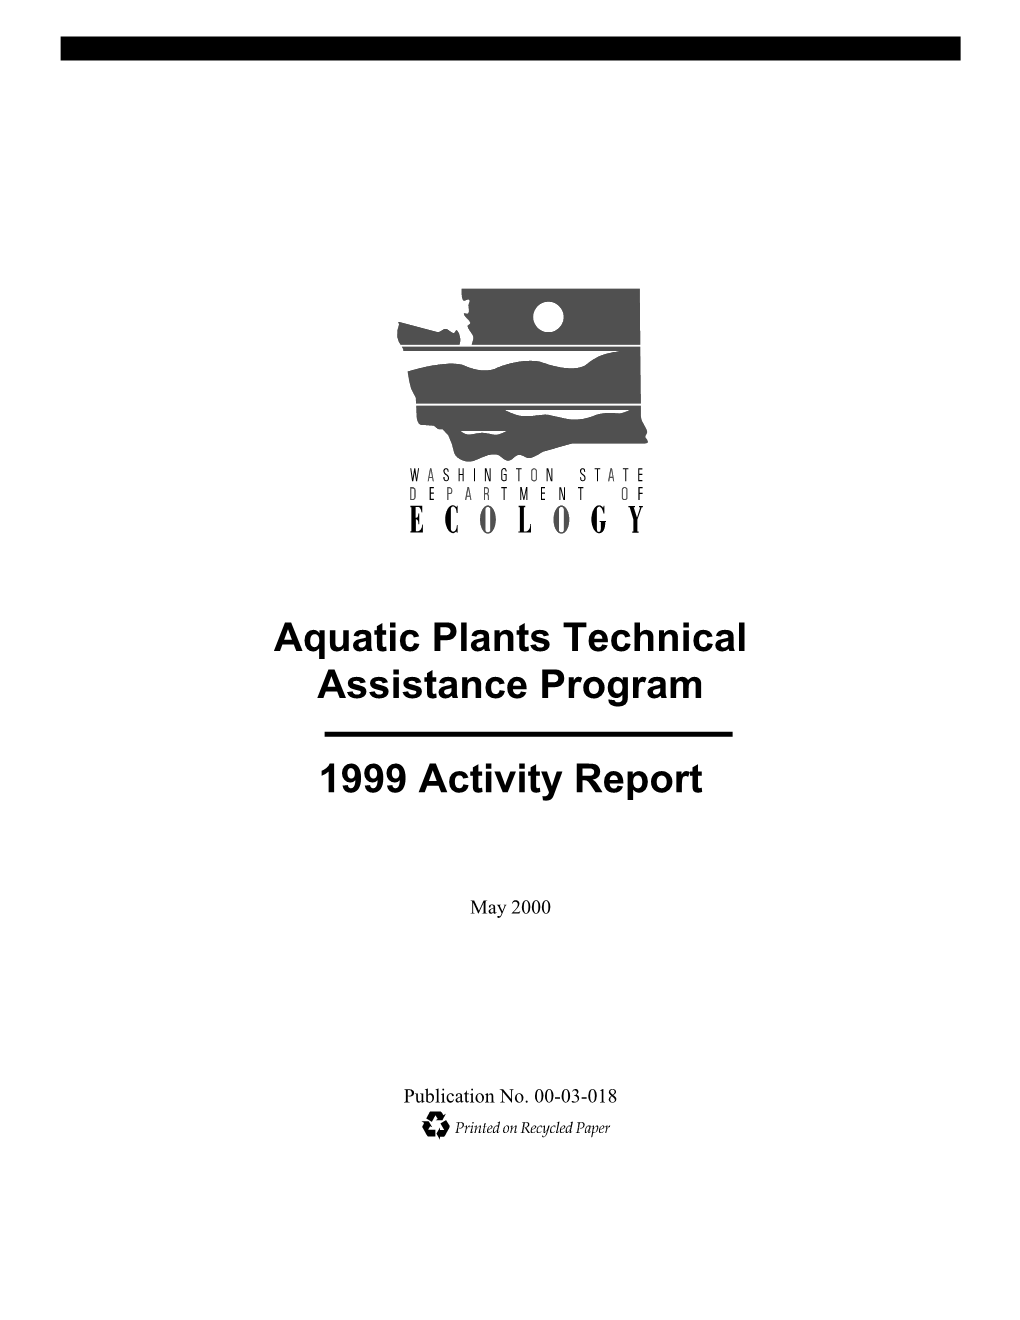 Aquatic Plants Technical Assistance Program